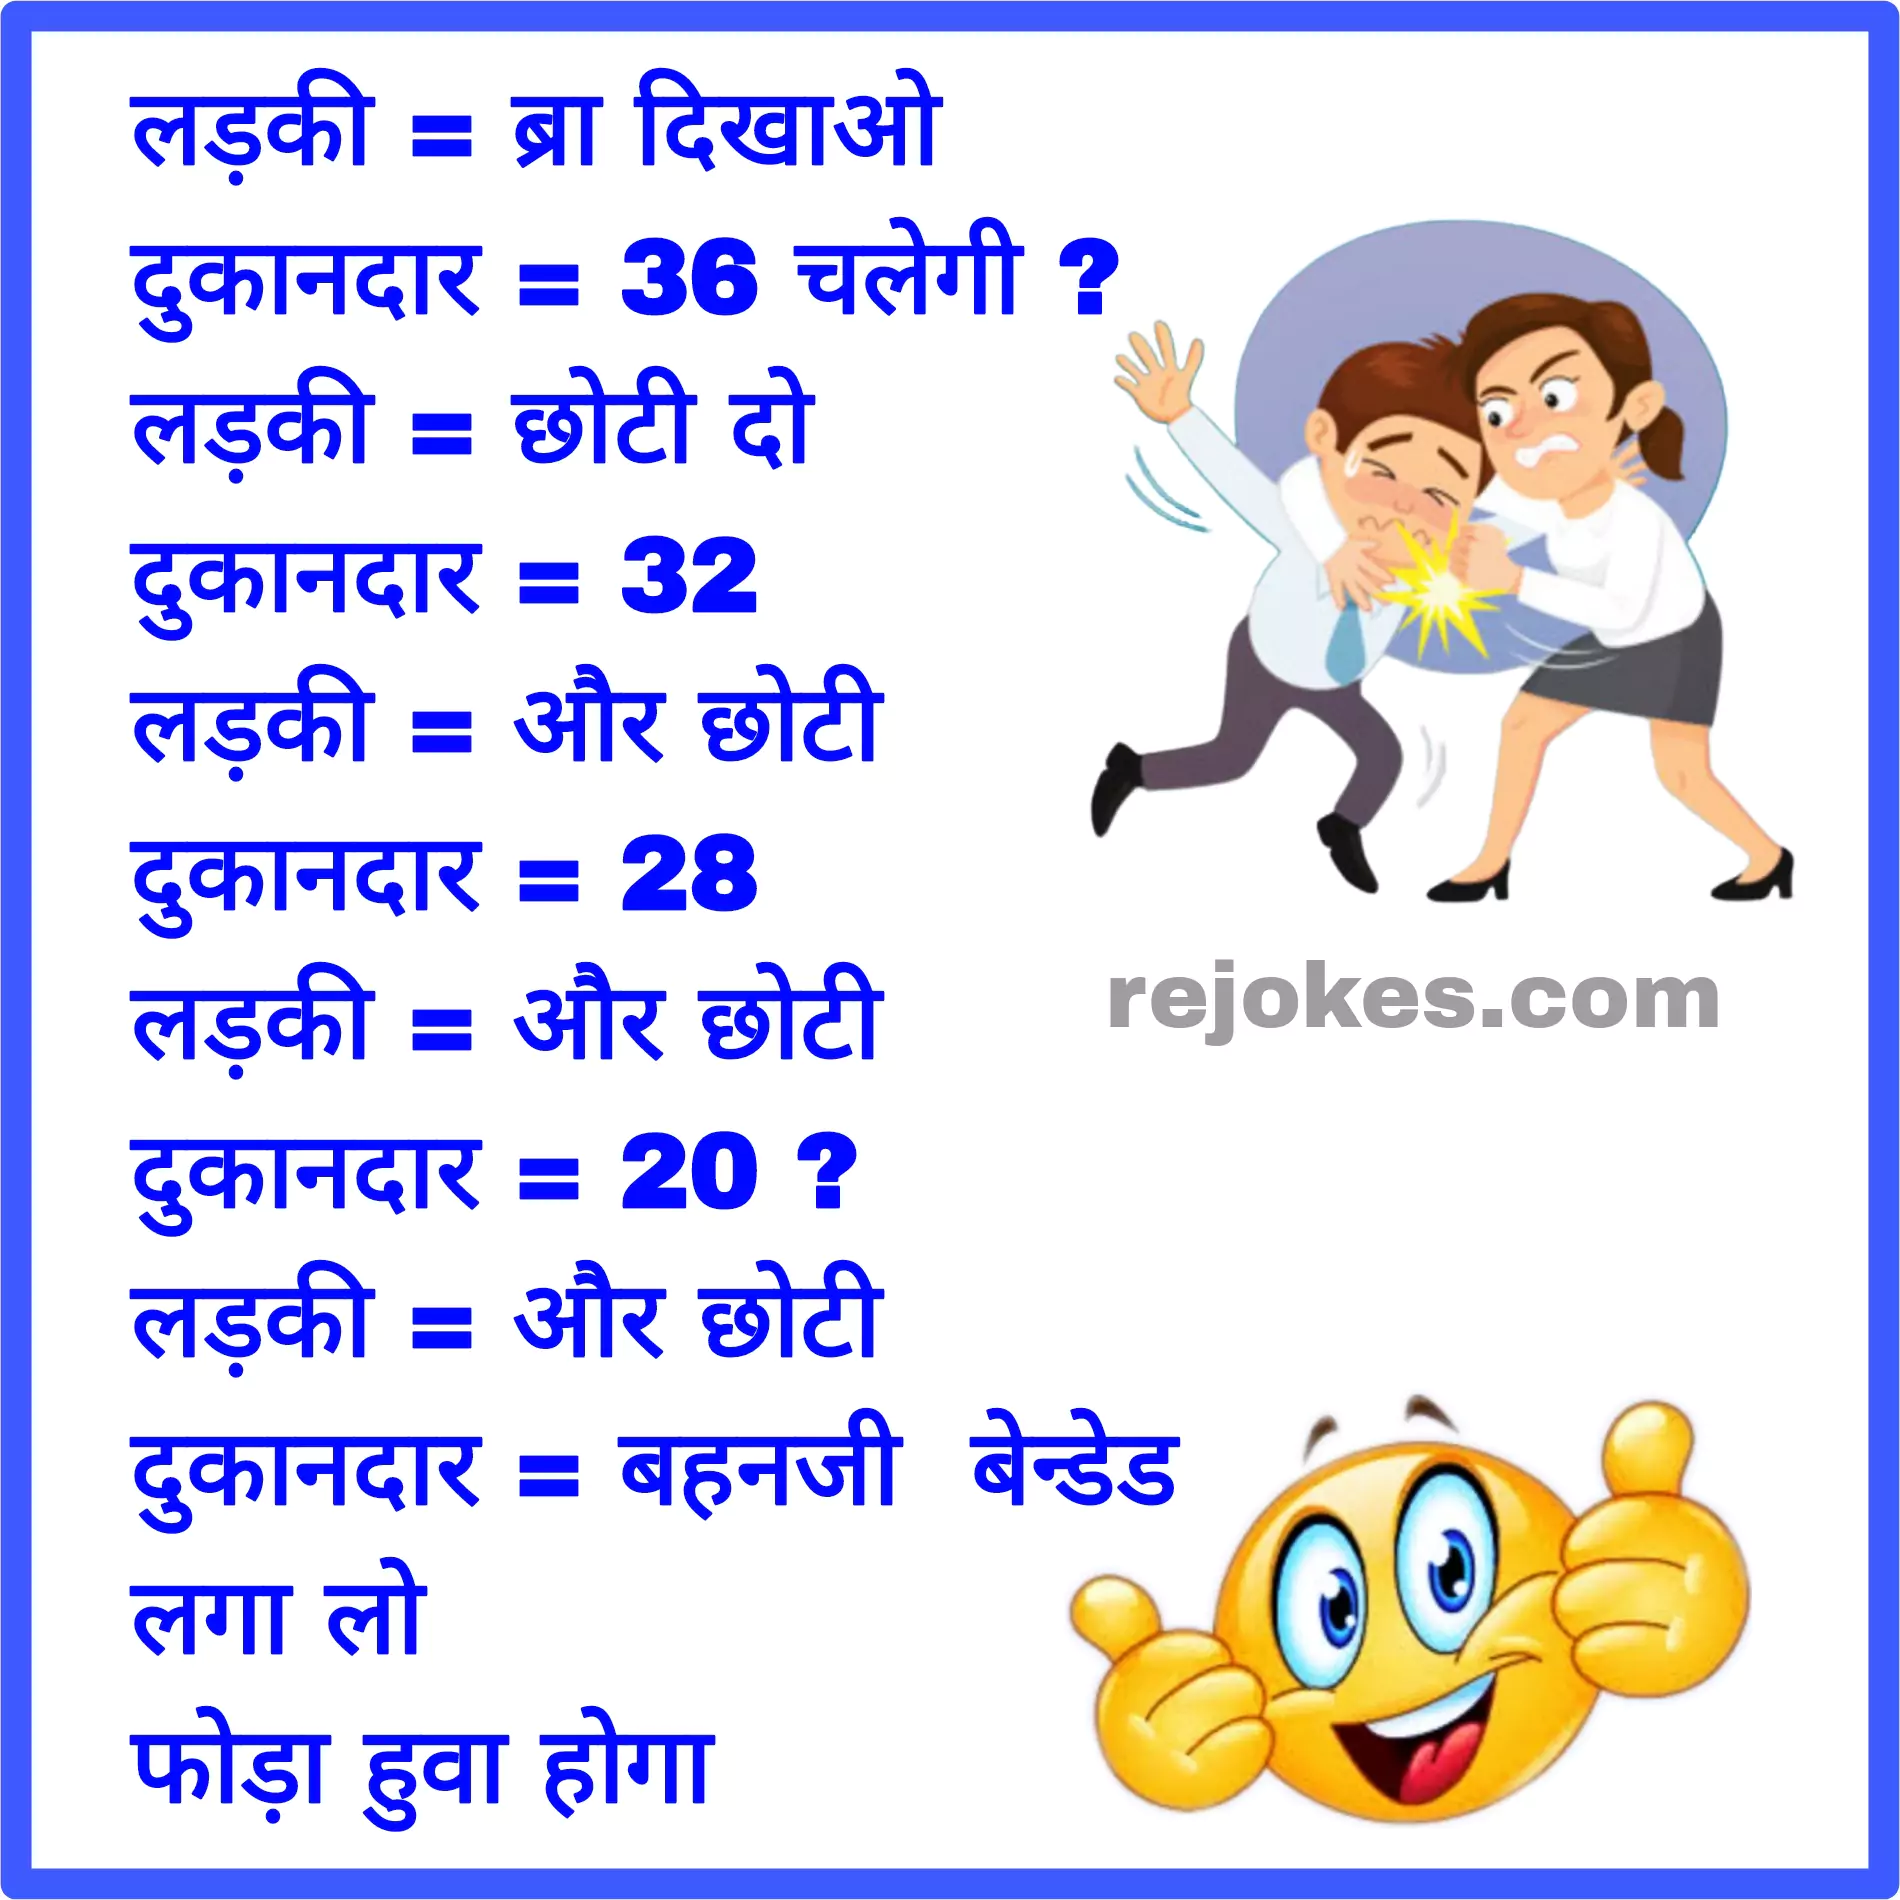 nonveg jokes image in hindi photo